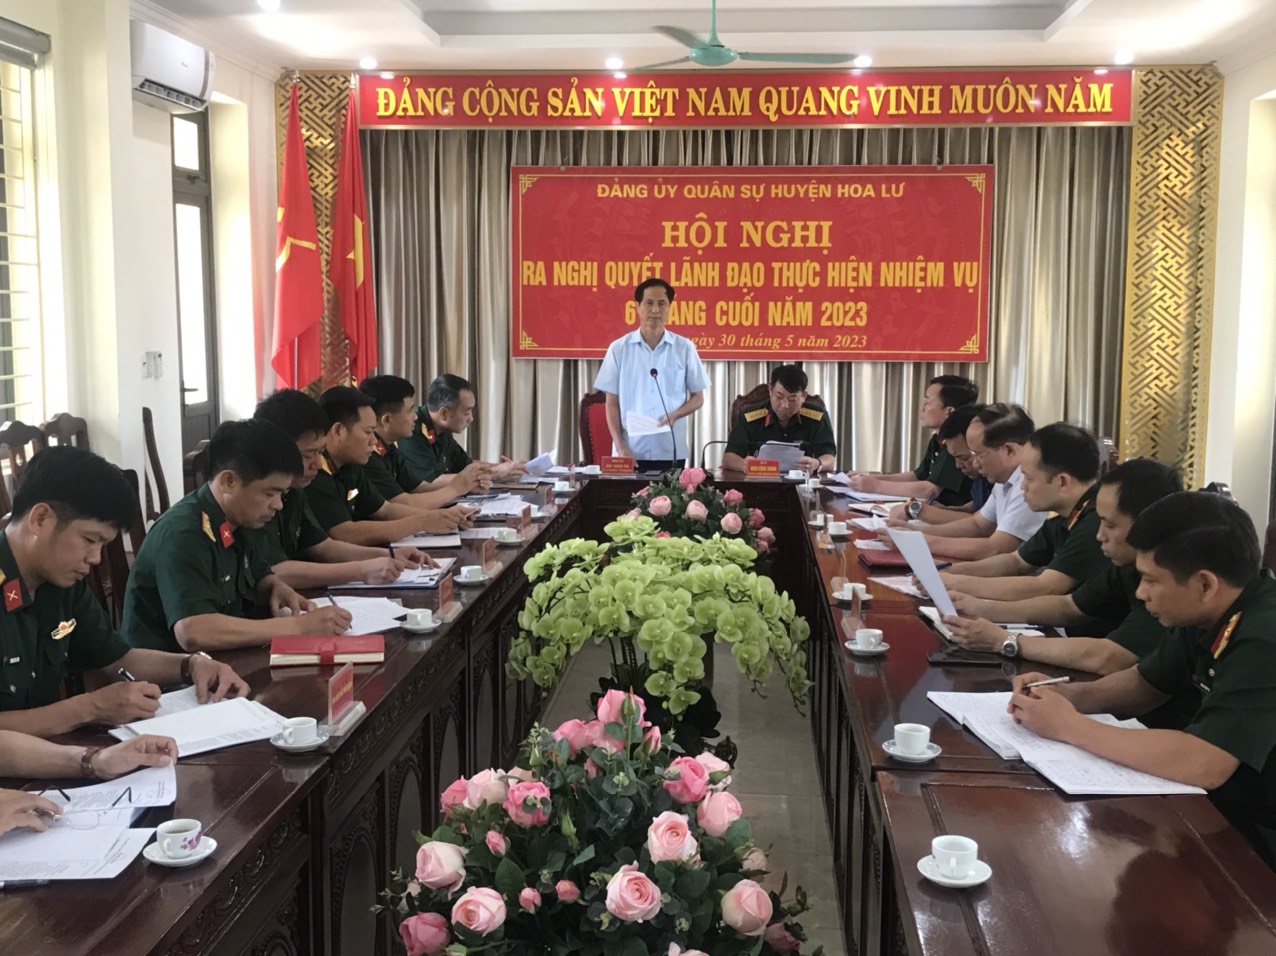 Đảng ủy Quân sự huyện Hoa Lư ra Nghị quyết lãnh đạo thực hiện nhiệm vụ 6 tháng cuối năm 2023